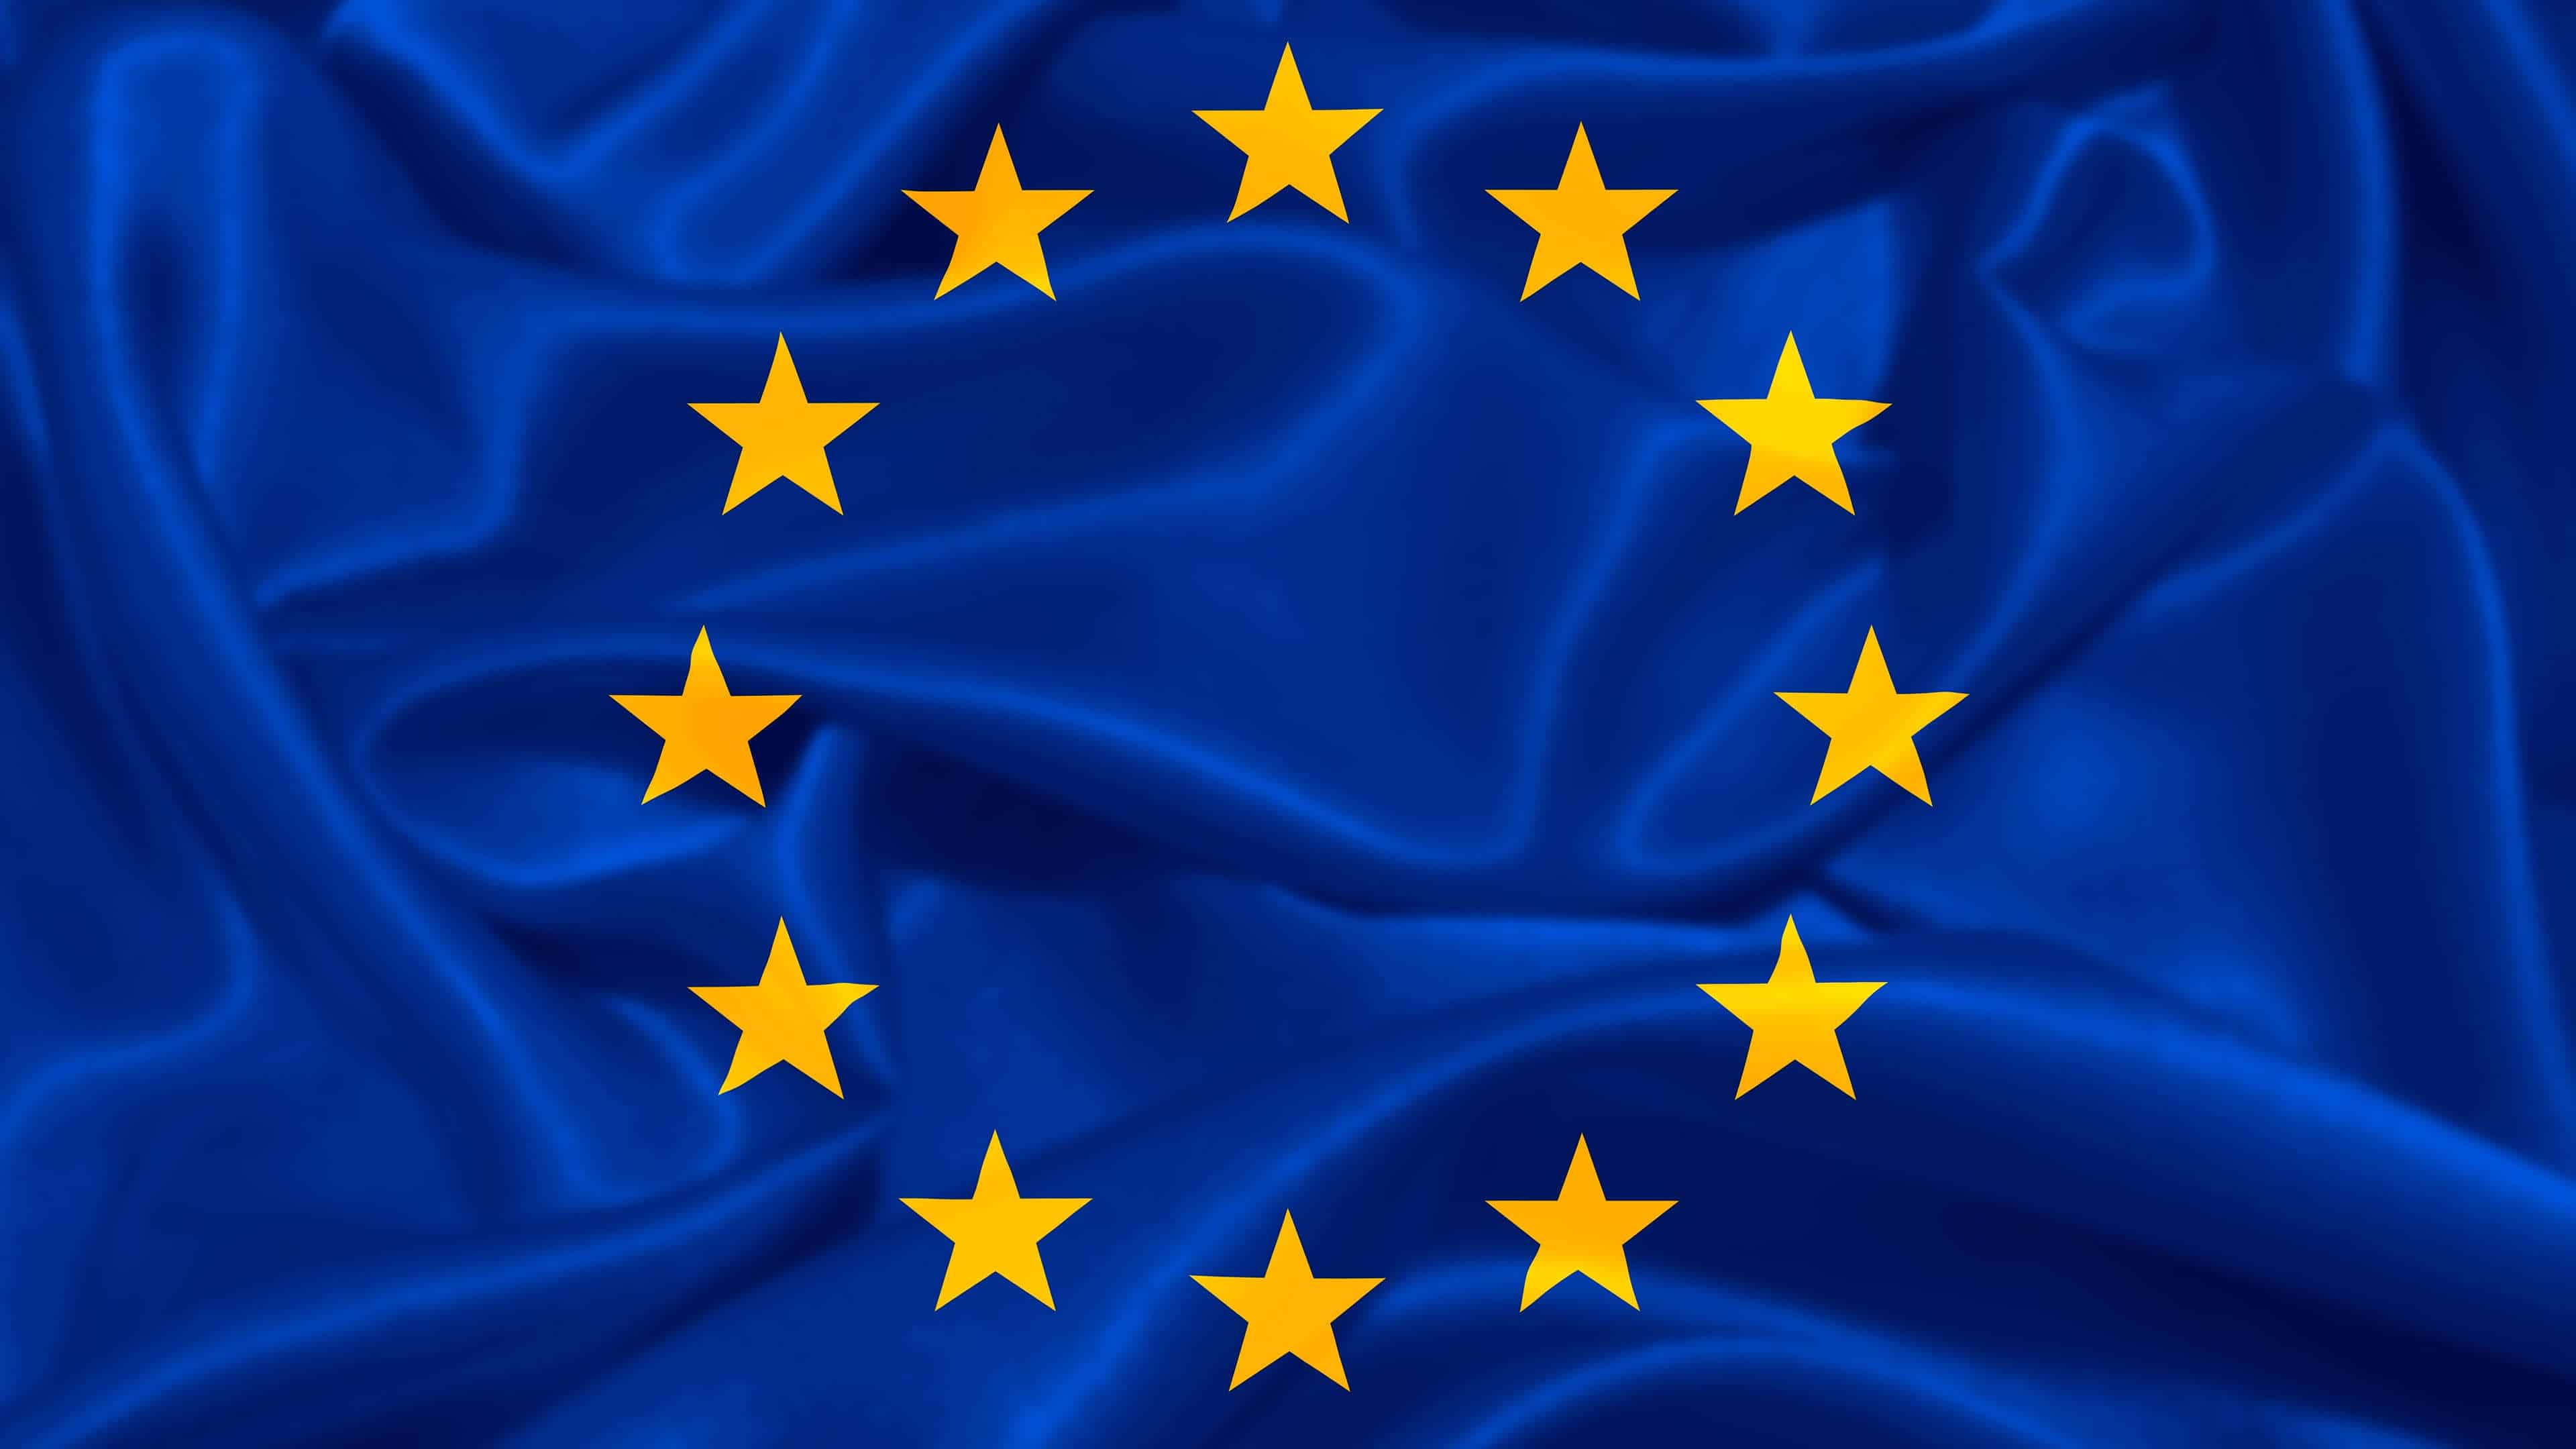 Tapeta Unia Europejska Flaga UE UHD 4K | Pixelz